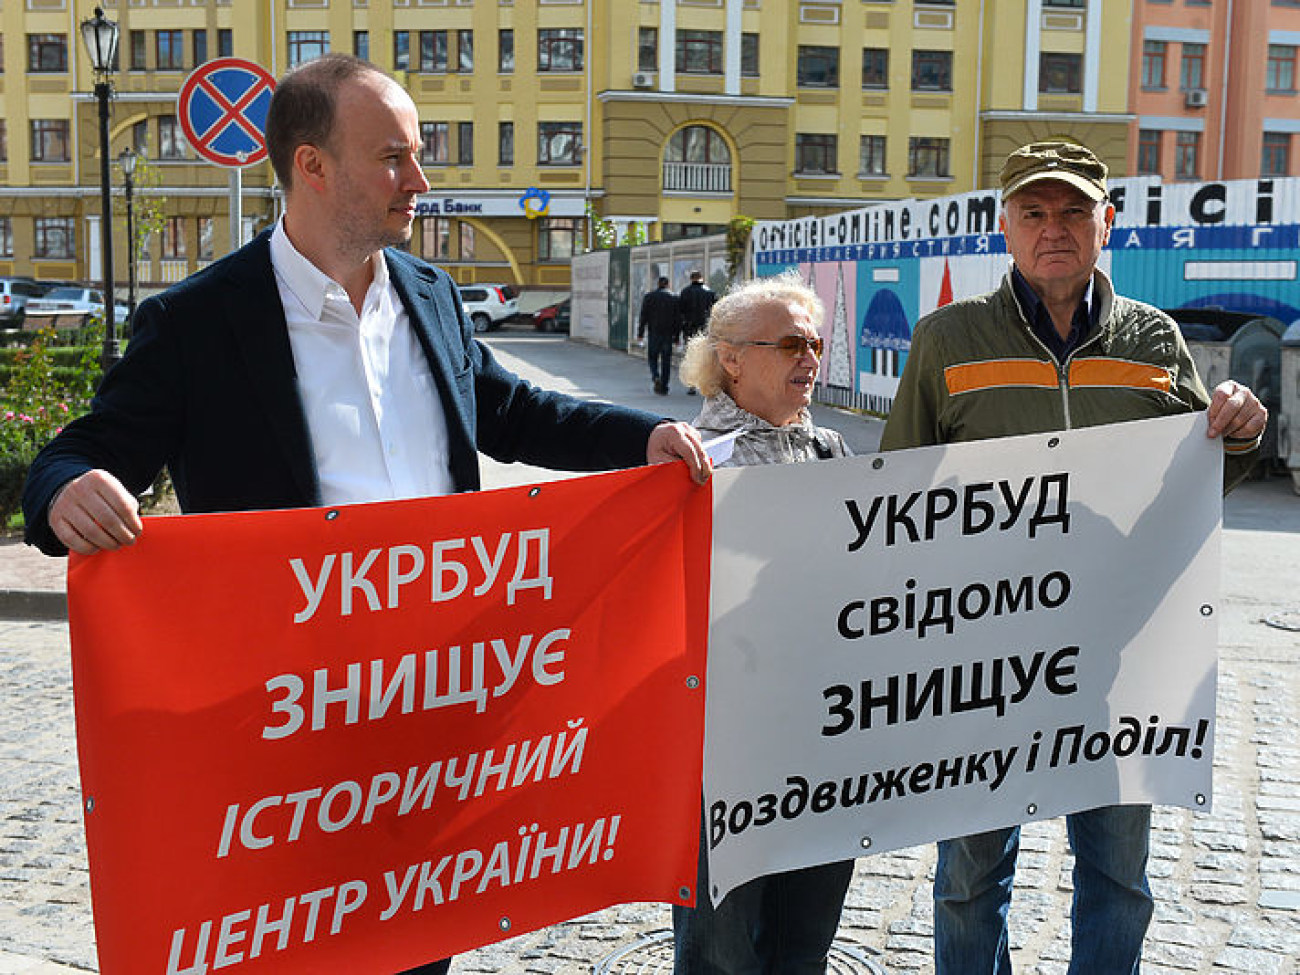 Жители столичной «Возжвиженки» протестуют против строительства в урочище Гончары-Кожемяки